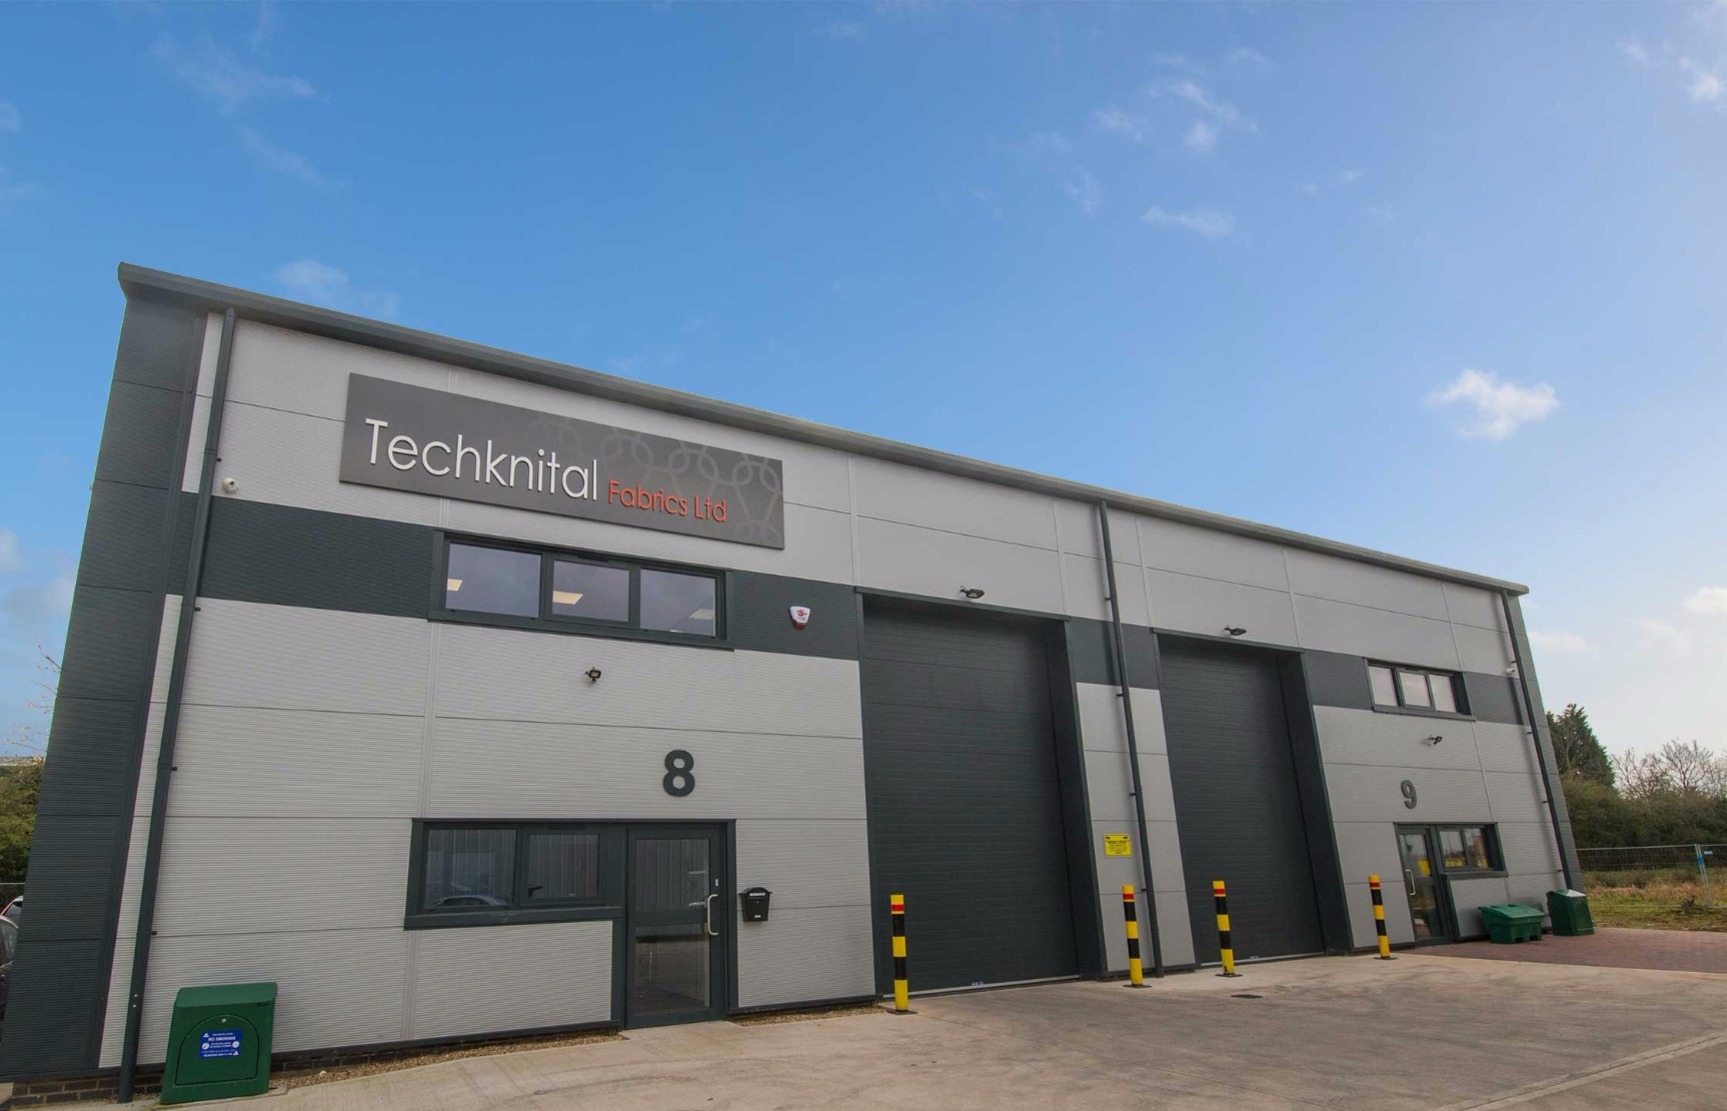 Techknital Fabrics headquarters, Hinckley UK